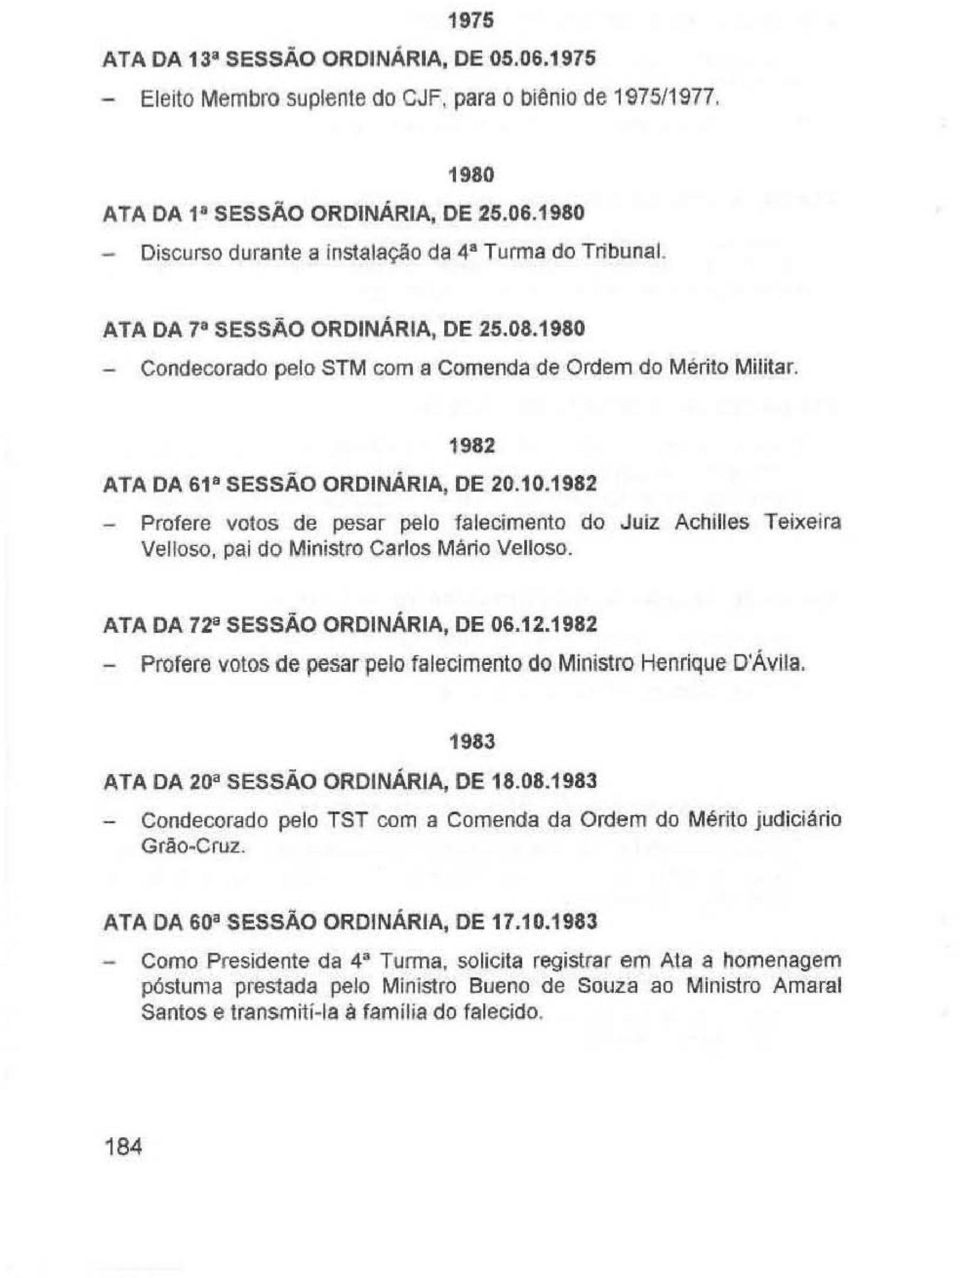 1982 - Profere valos de pesar pelo falecimento do Juiz Achilles Teixeira Velloso. pai do Ministro Carlos Mário Velloso. ATA DA 72 8 SESSÃO ORDINÁRIA, DE 06.12.